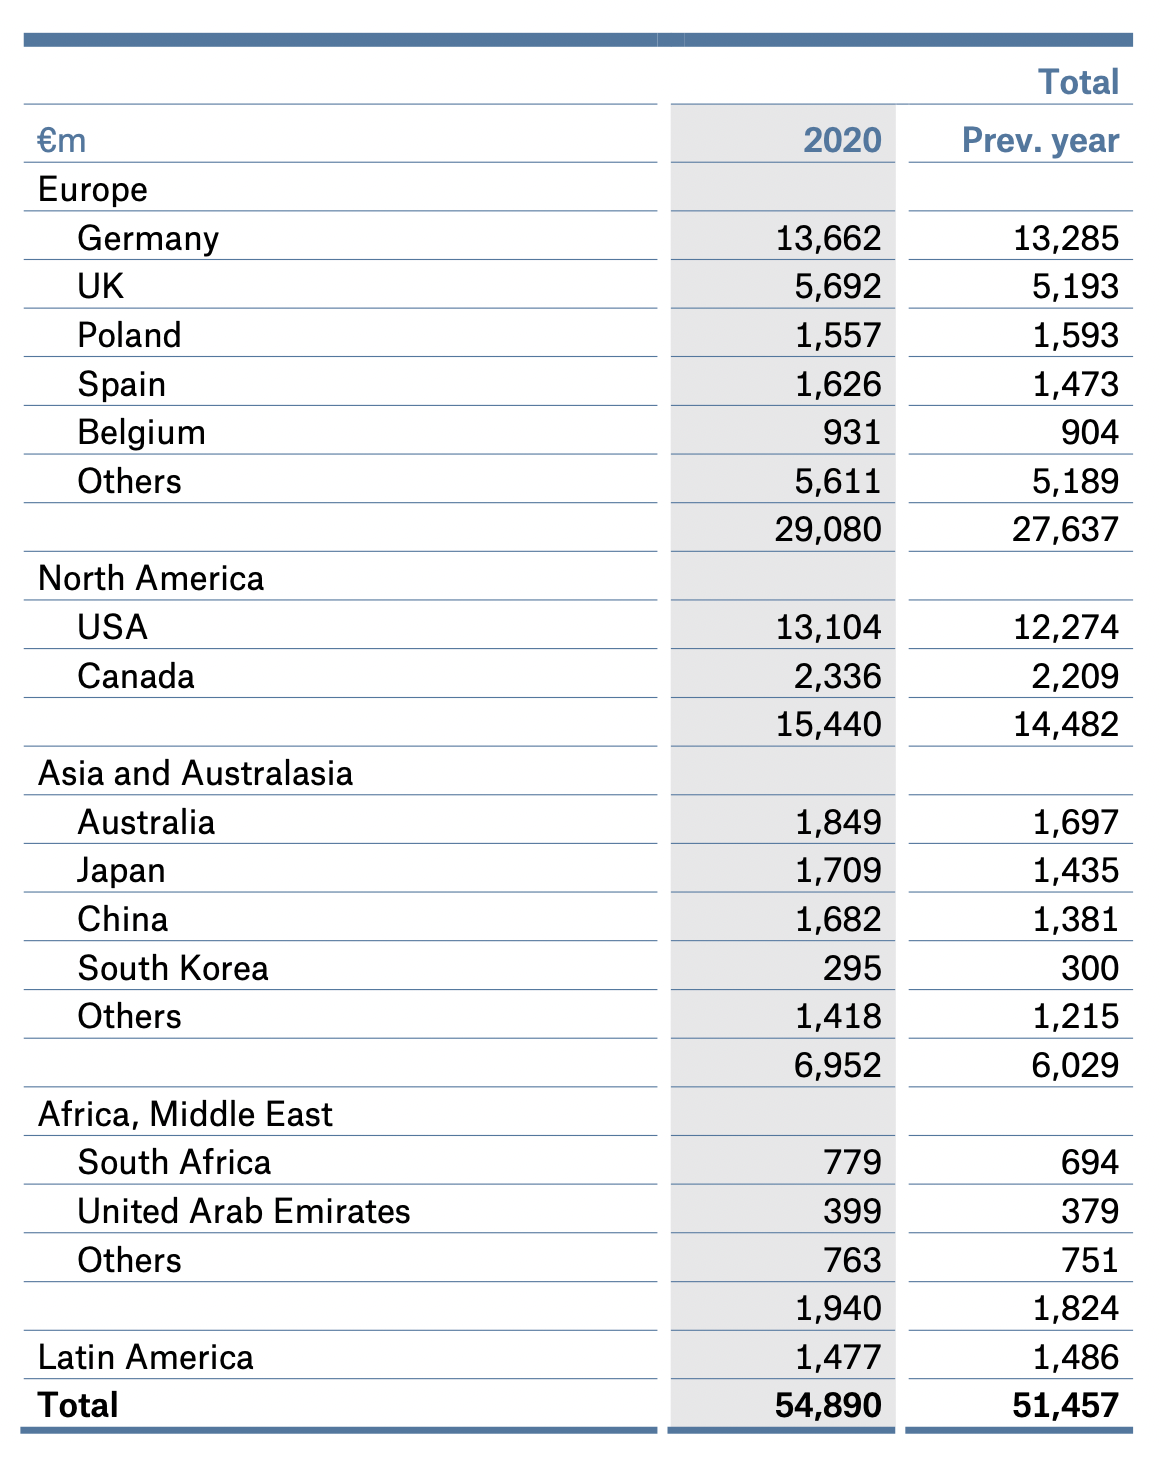 Страховые взносы по странам и регионам в миллионах евро. Источник: годовой отчет компании, стр.&nbsp;147&nbsp;(149)